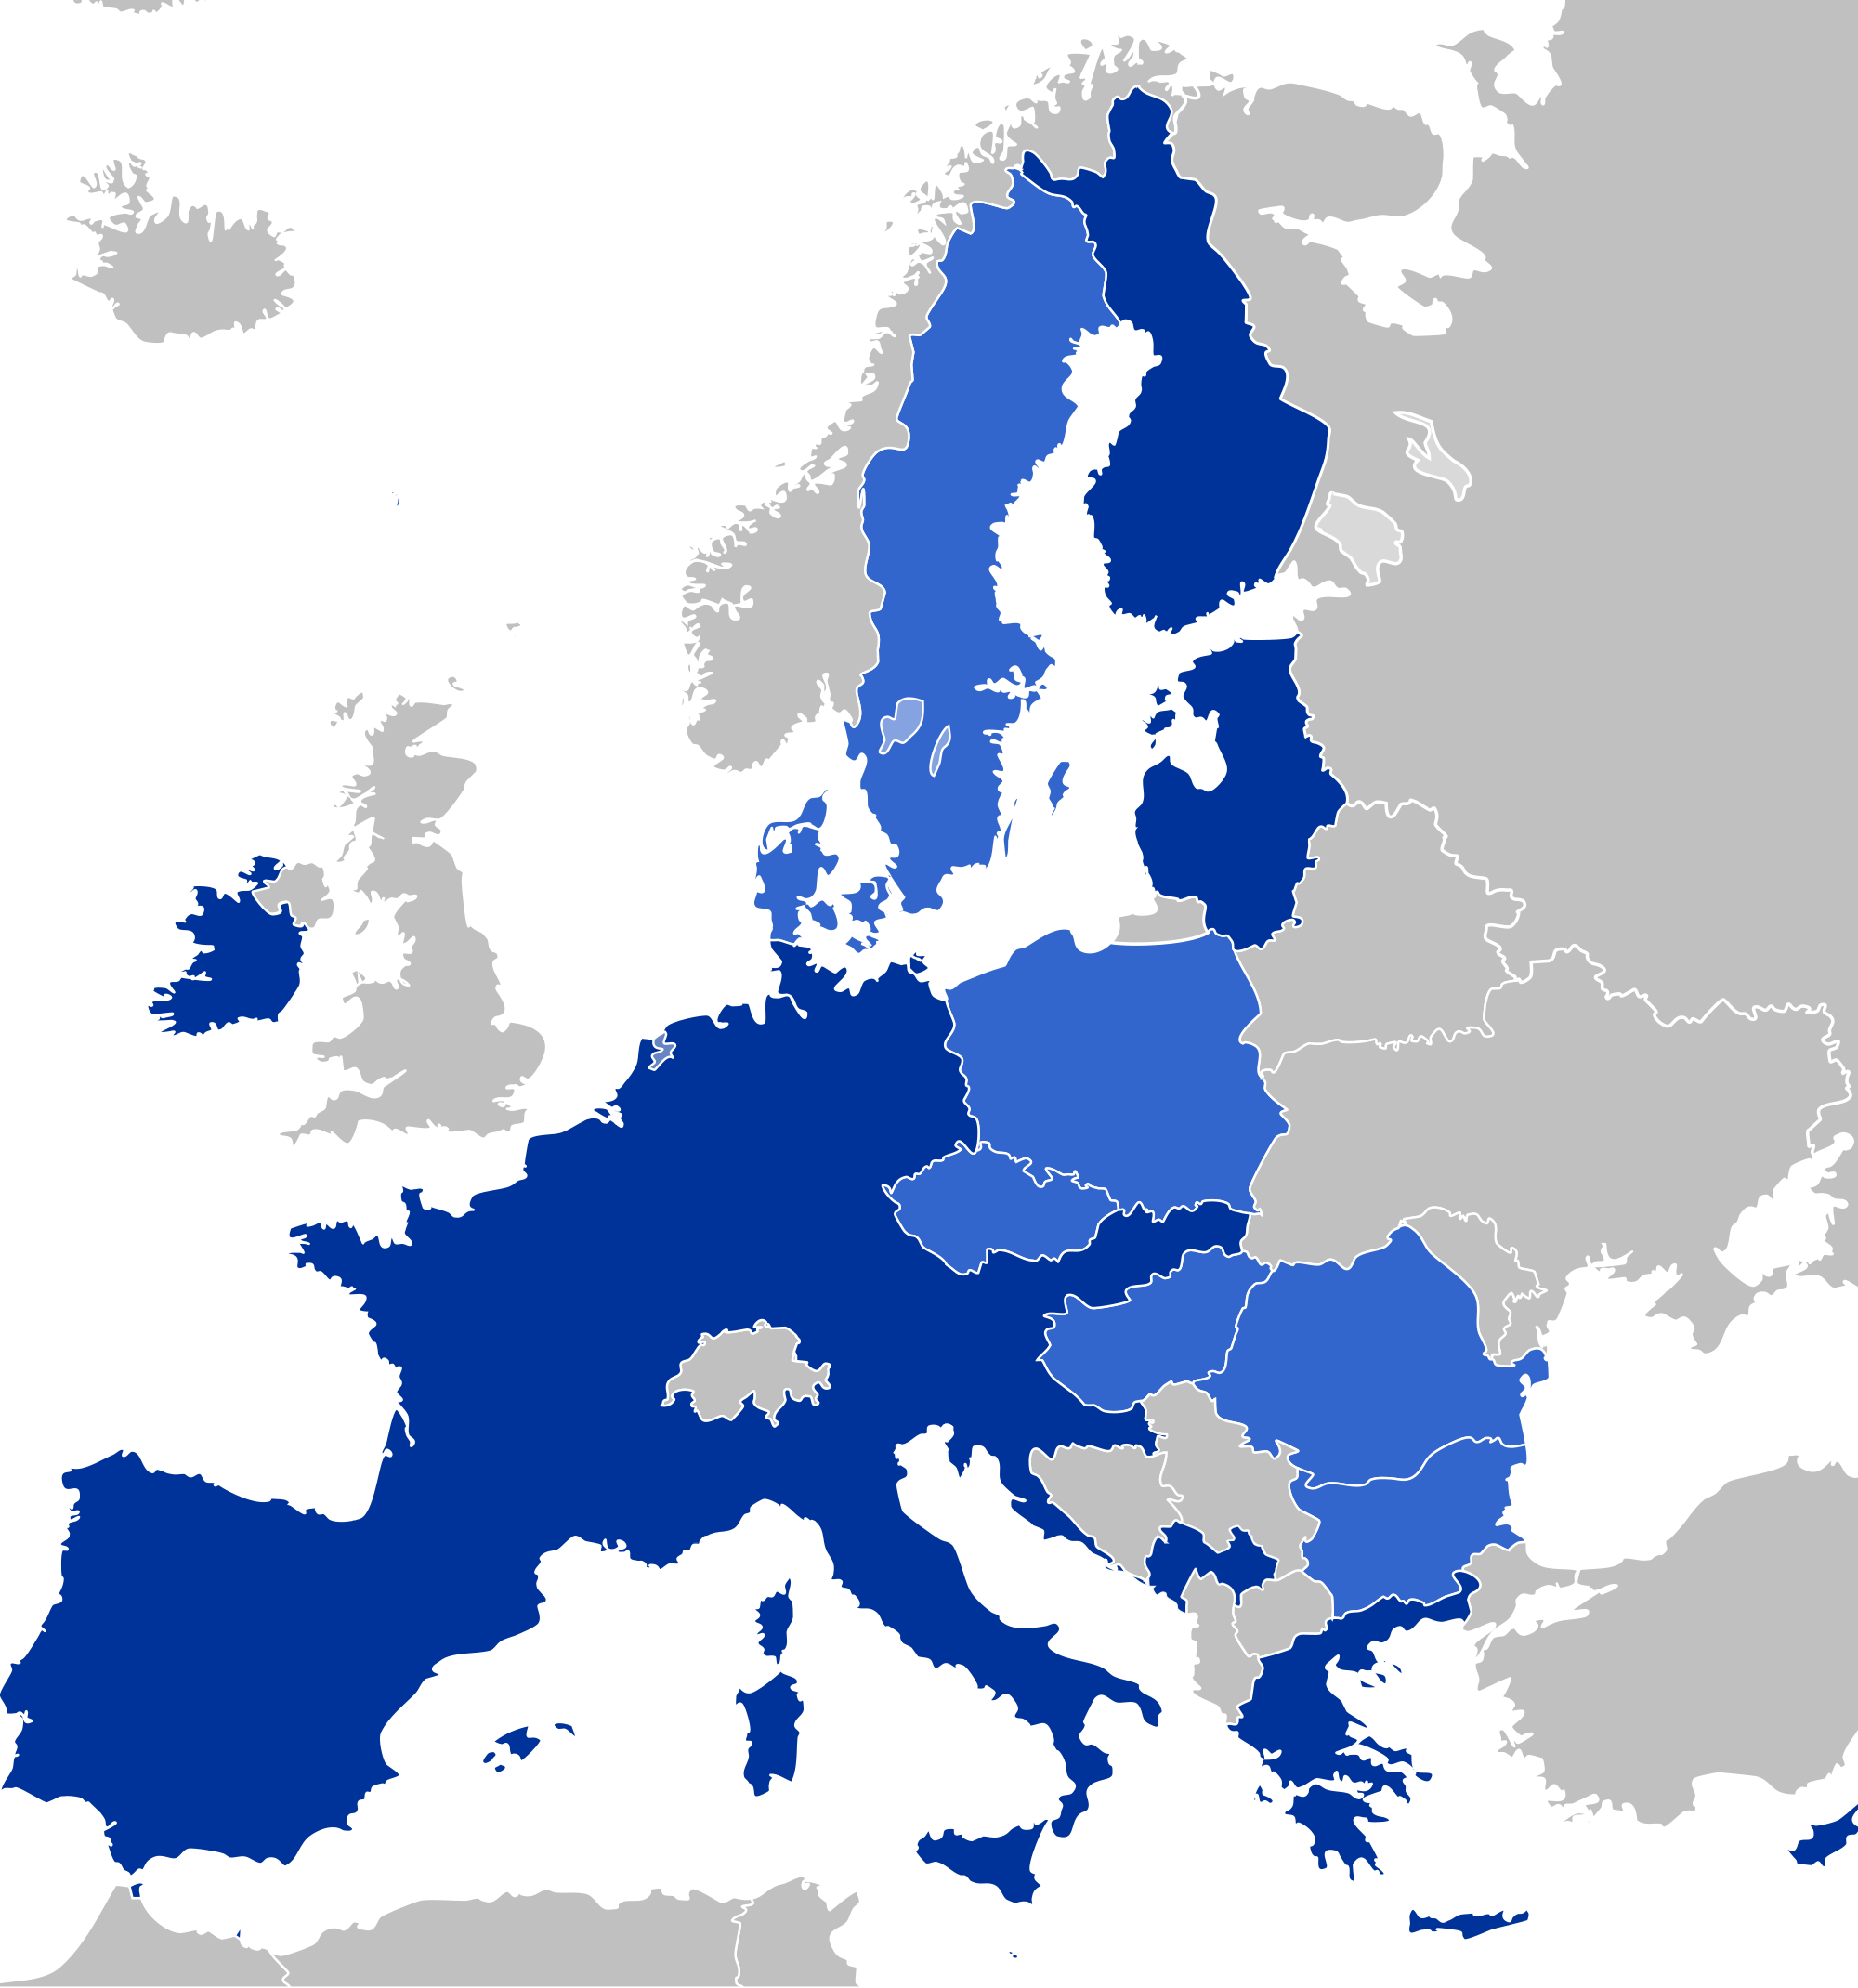 map of European Union eurozone